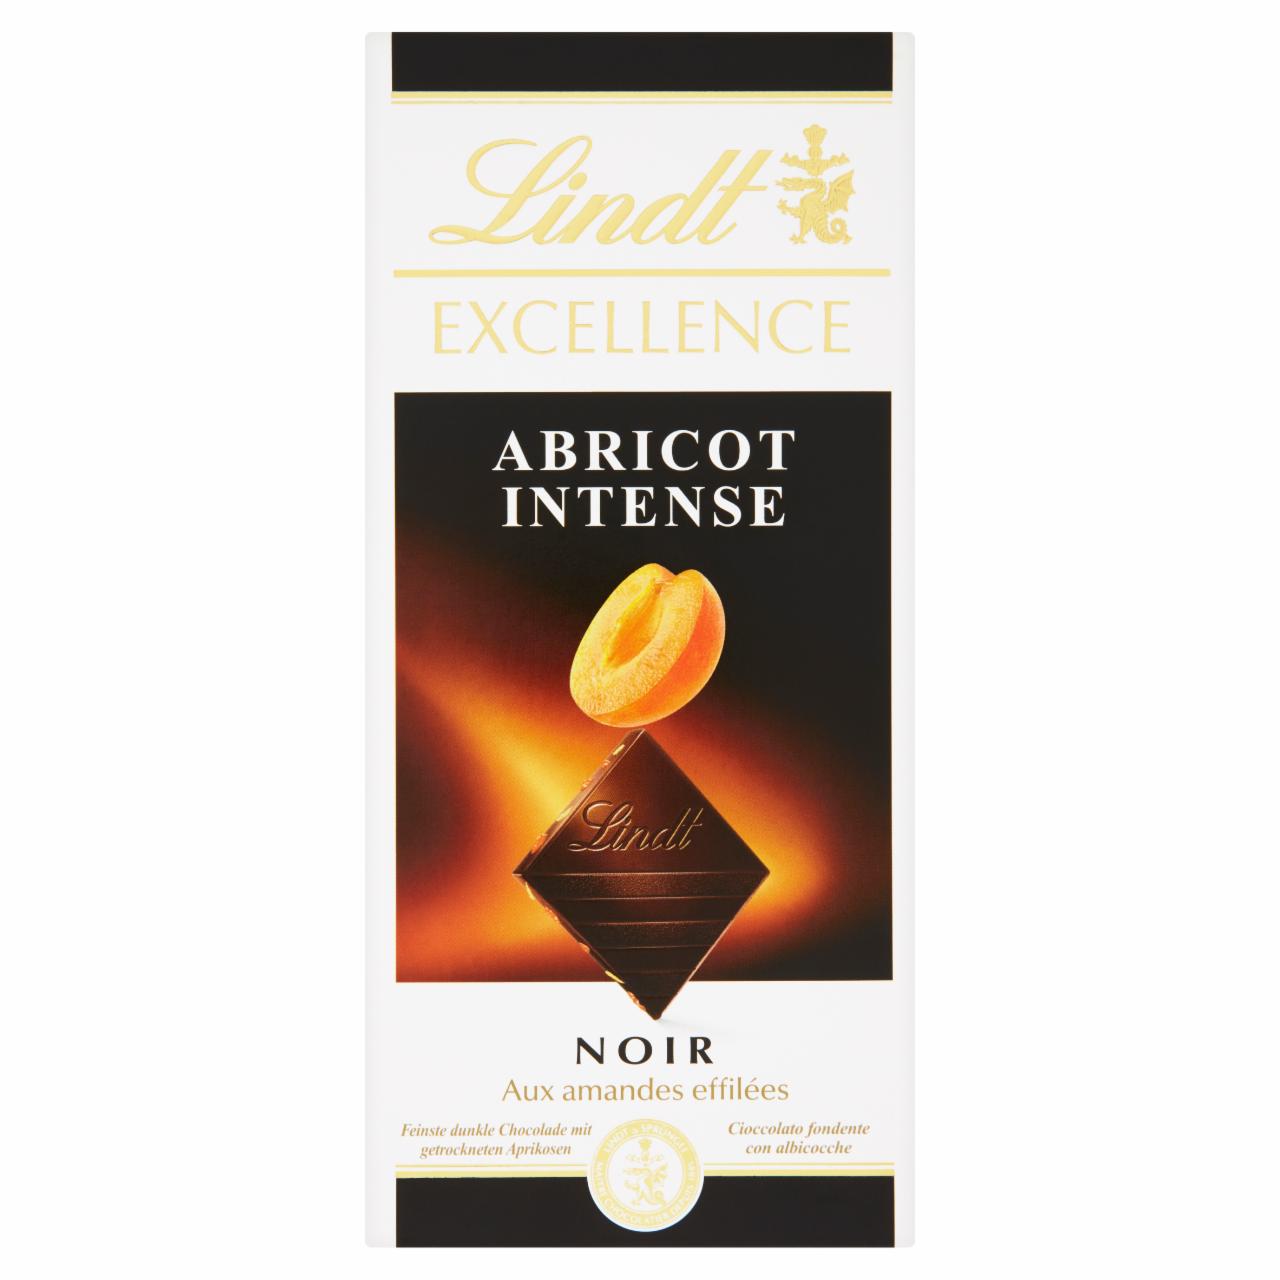 Képek - Lindt Excellence Abricot Intense extra étcsokoládé sárgabarack-darabokkal és mandulapehellyel 100 g